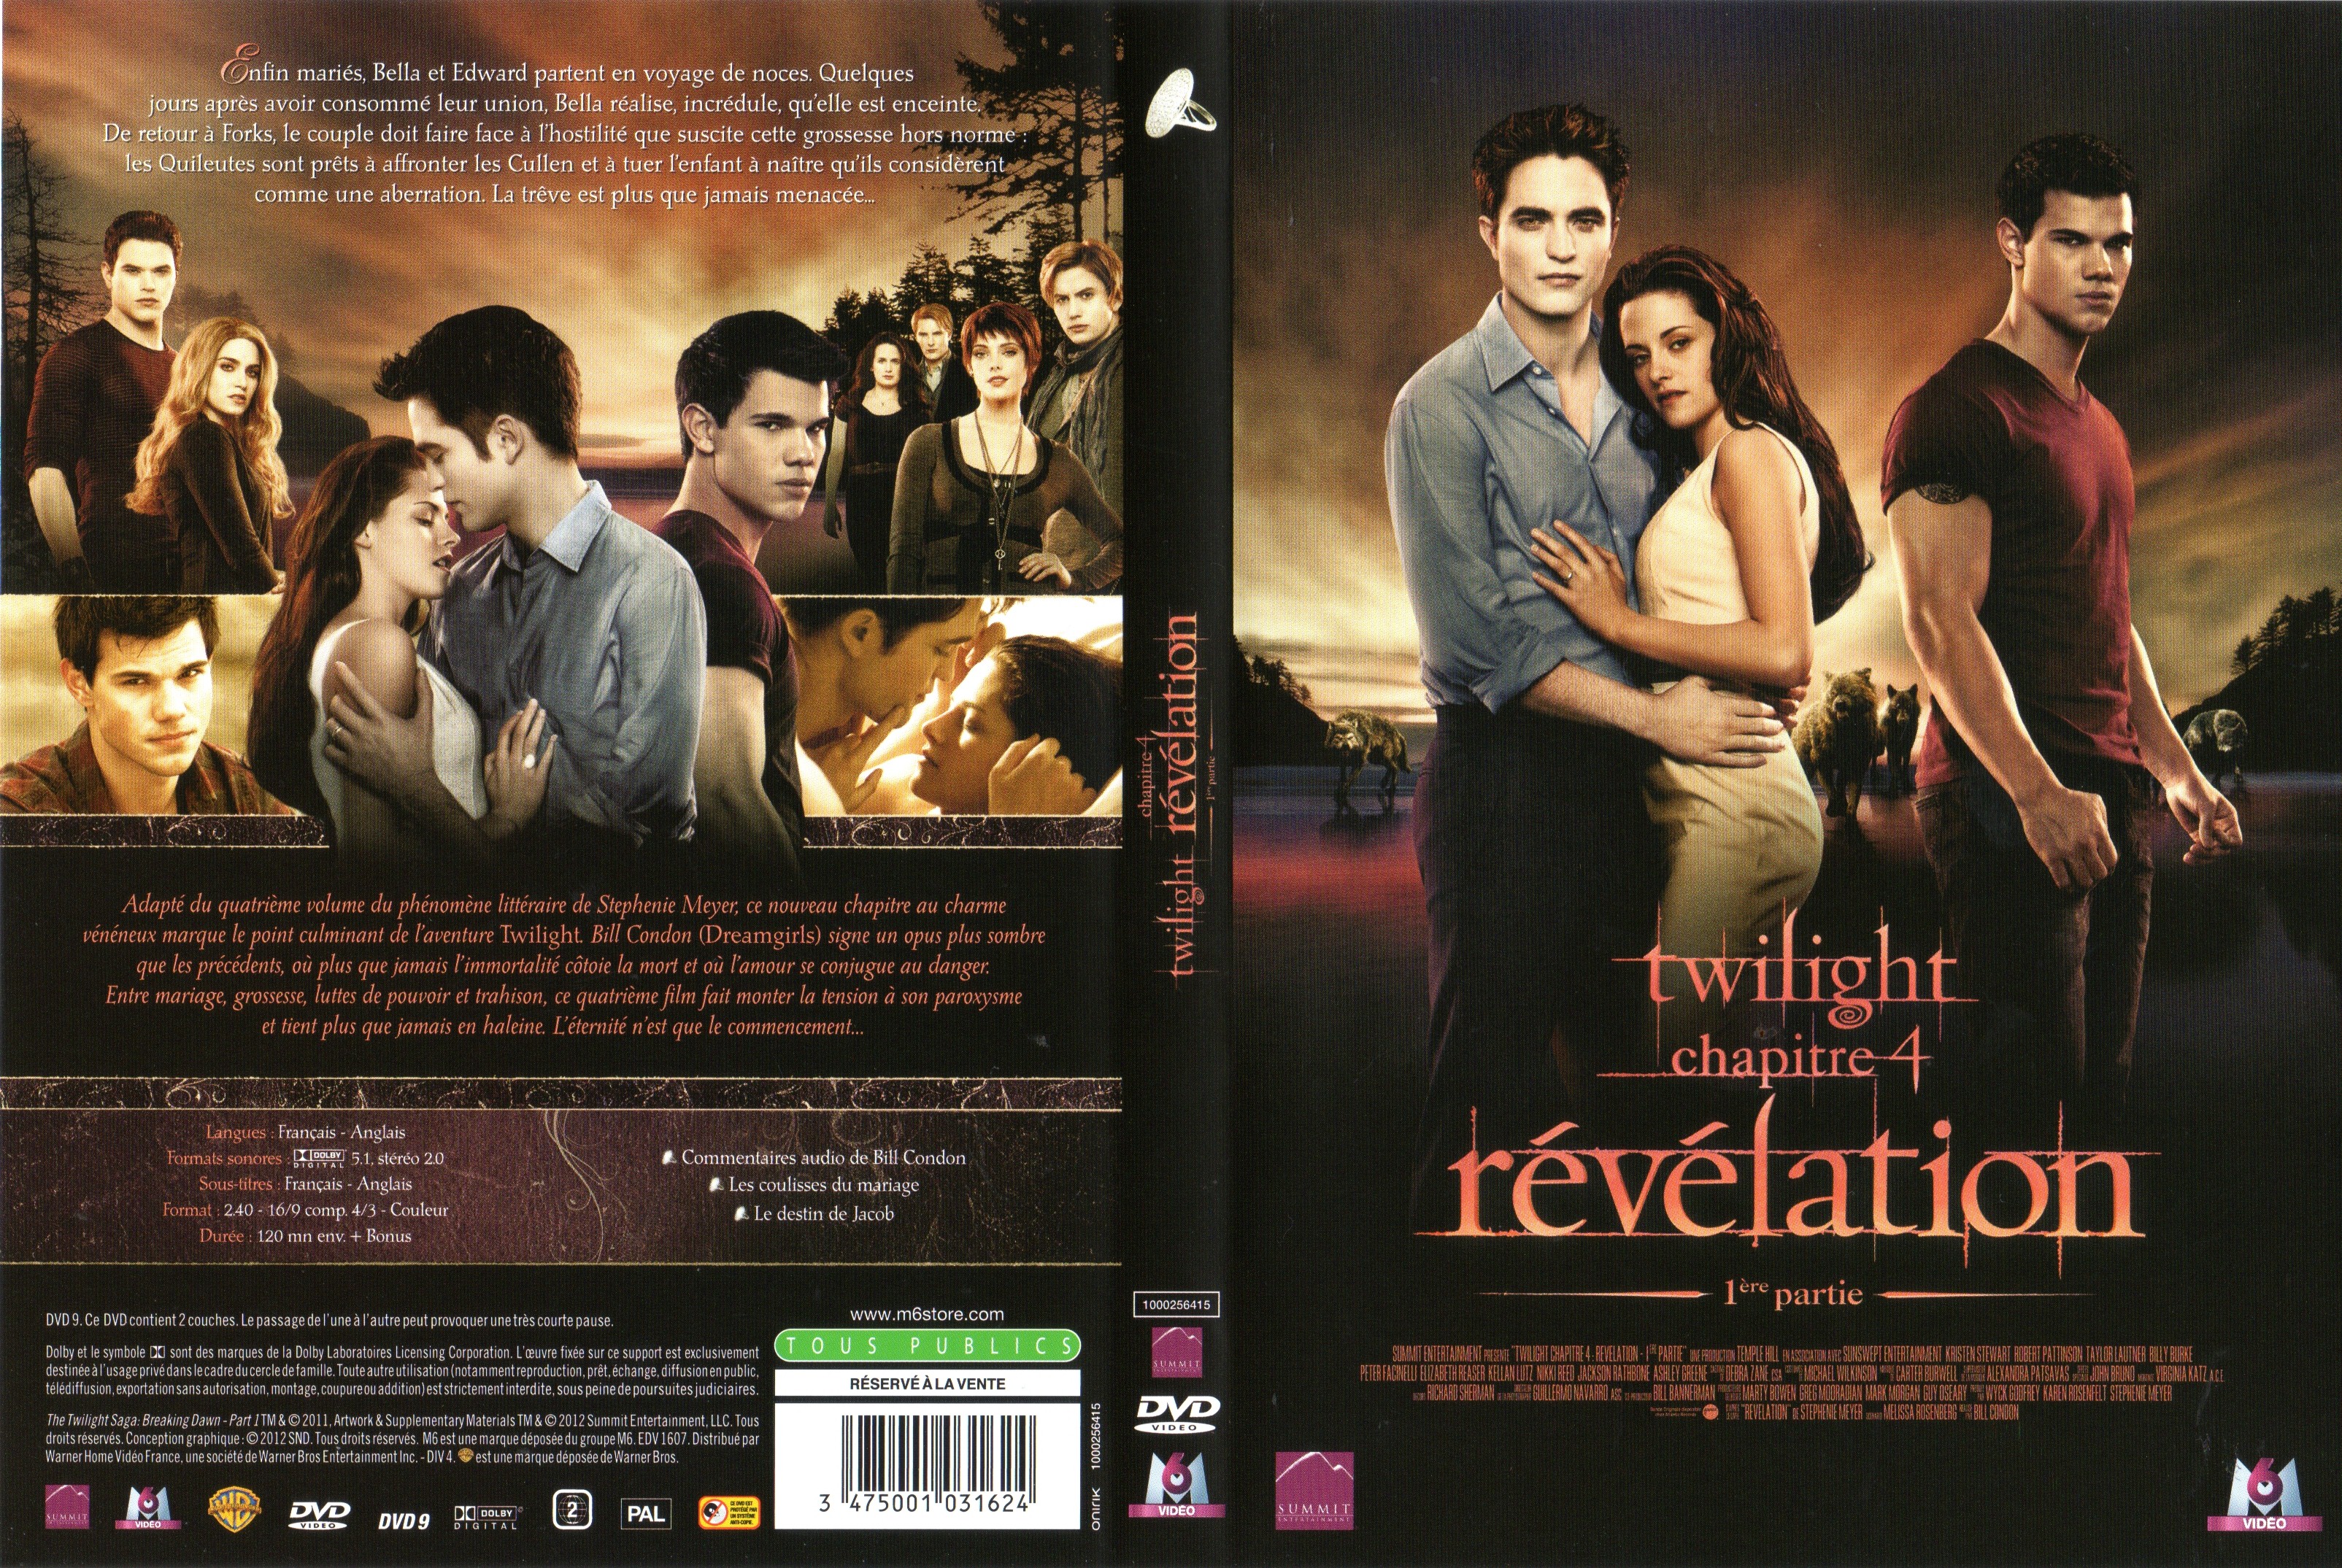 Jaquette Dvd De Twilight Chapitre 4 Révélation 1ère Partie V2